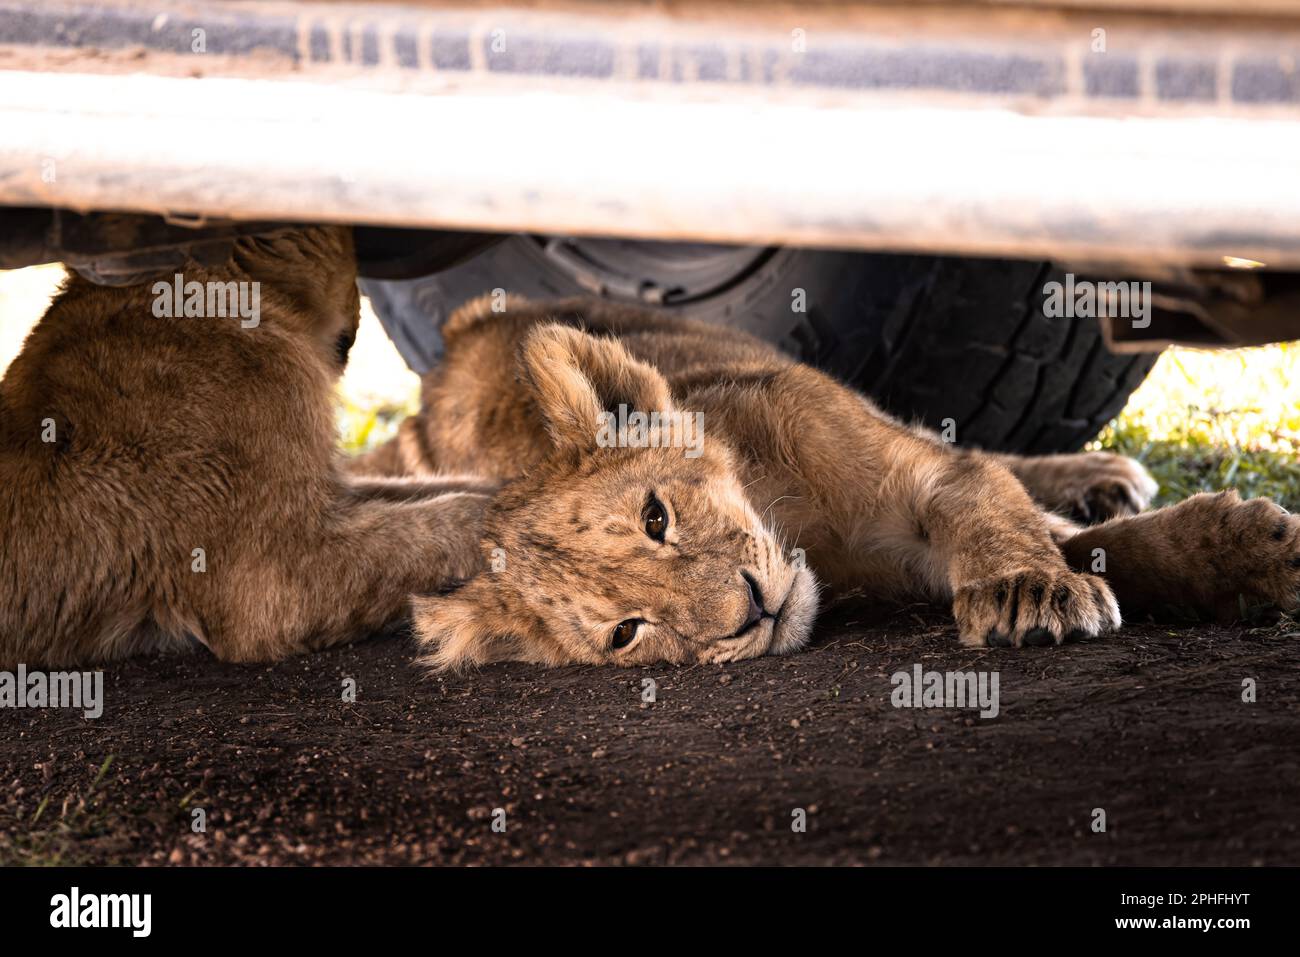 Animaux sauvages mignons de lion, simba, sous une jeep safari lors d'un trajet de jeu dans le parc national de Serengeti, Tanzanie, Afrique Banque D'Images